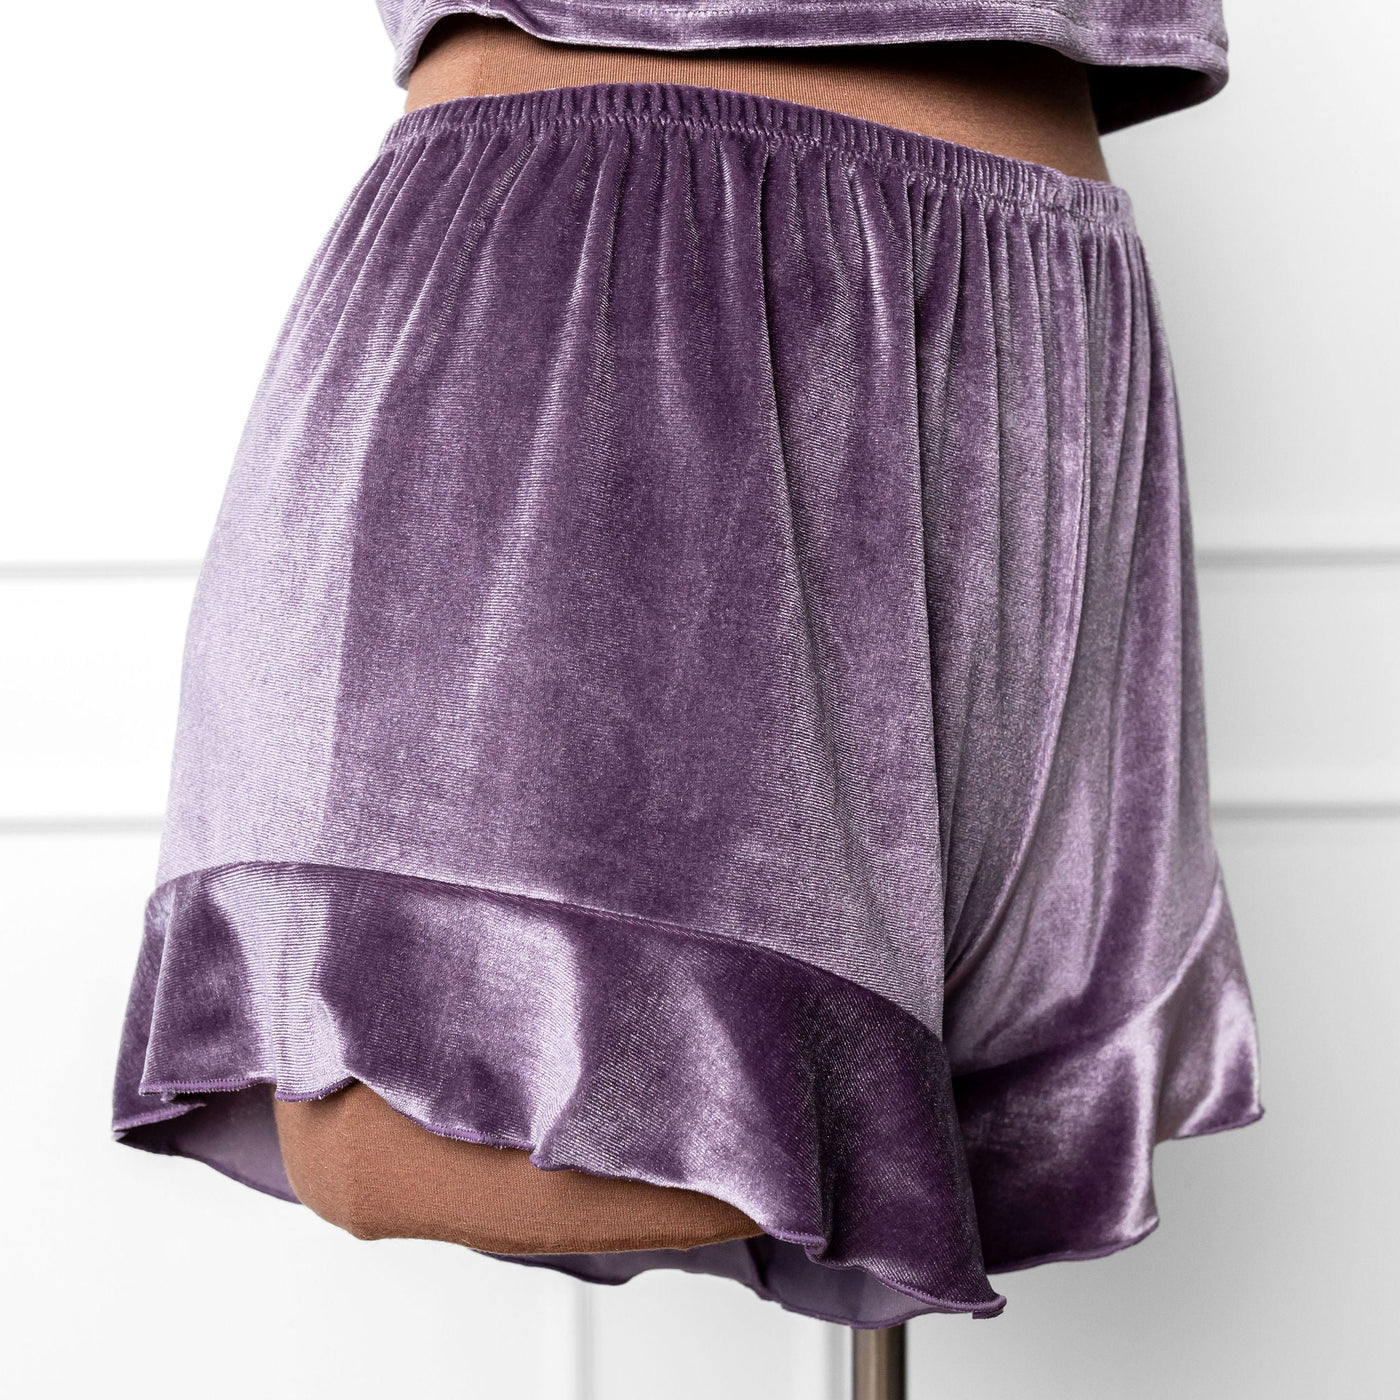 Velvet Ruffle Shorts - Lavender Haze - Mentionables